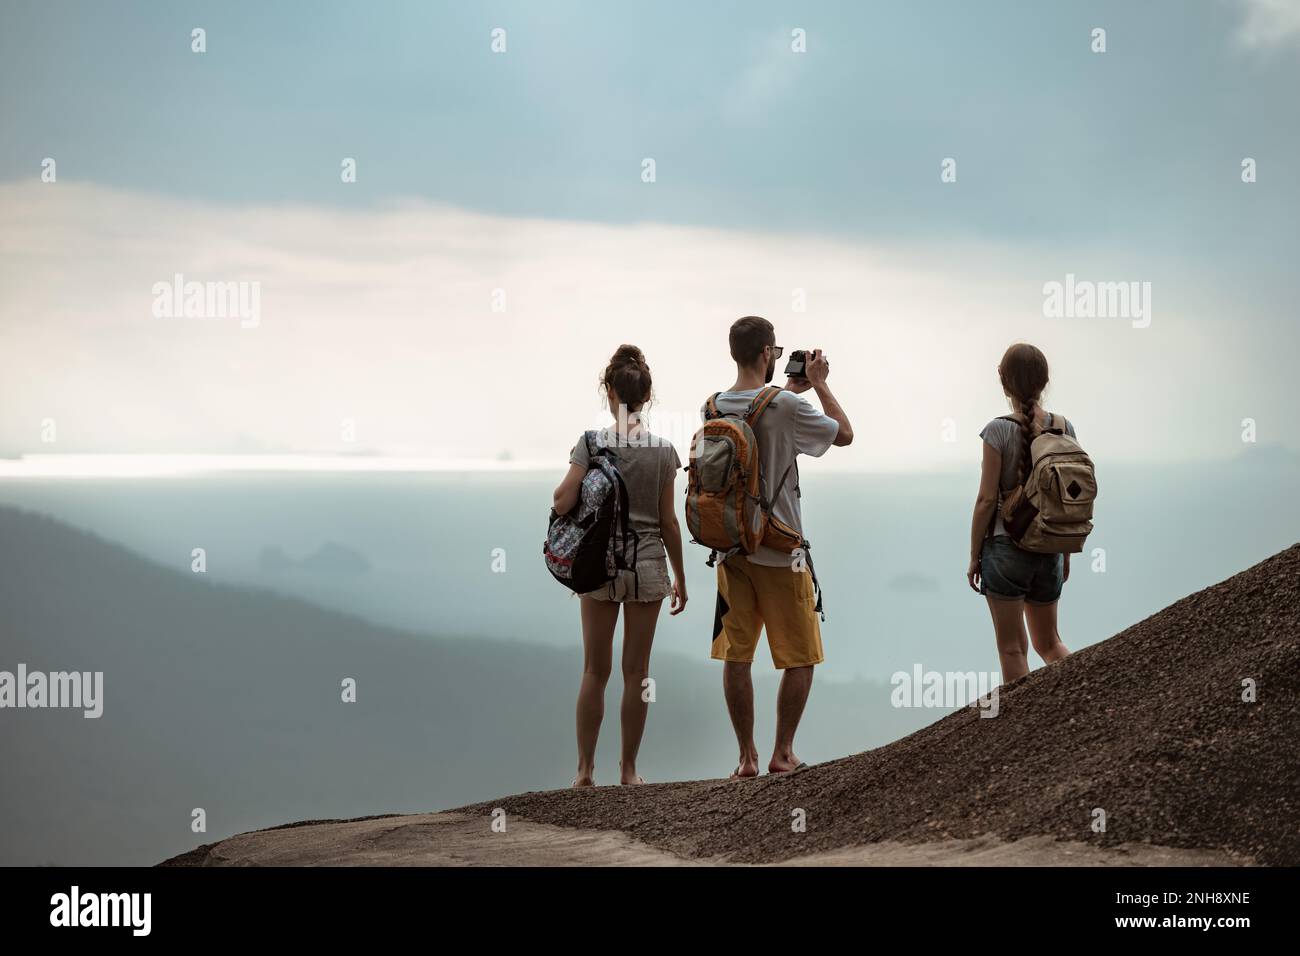 Trois jeunes touristes avec des sacs à dos se dresse sur le sommet de la montagne et regarde la vue sur la mer Banque D'Images